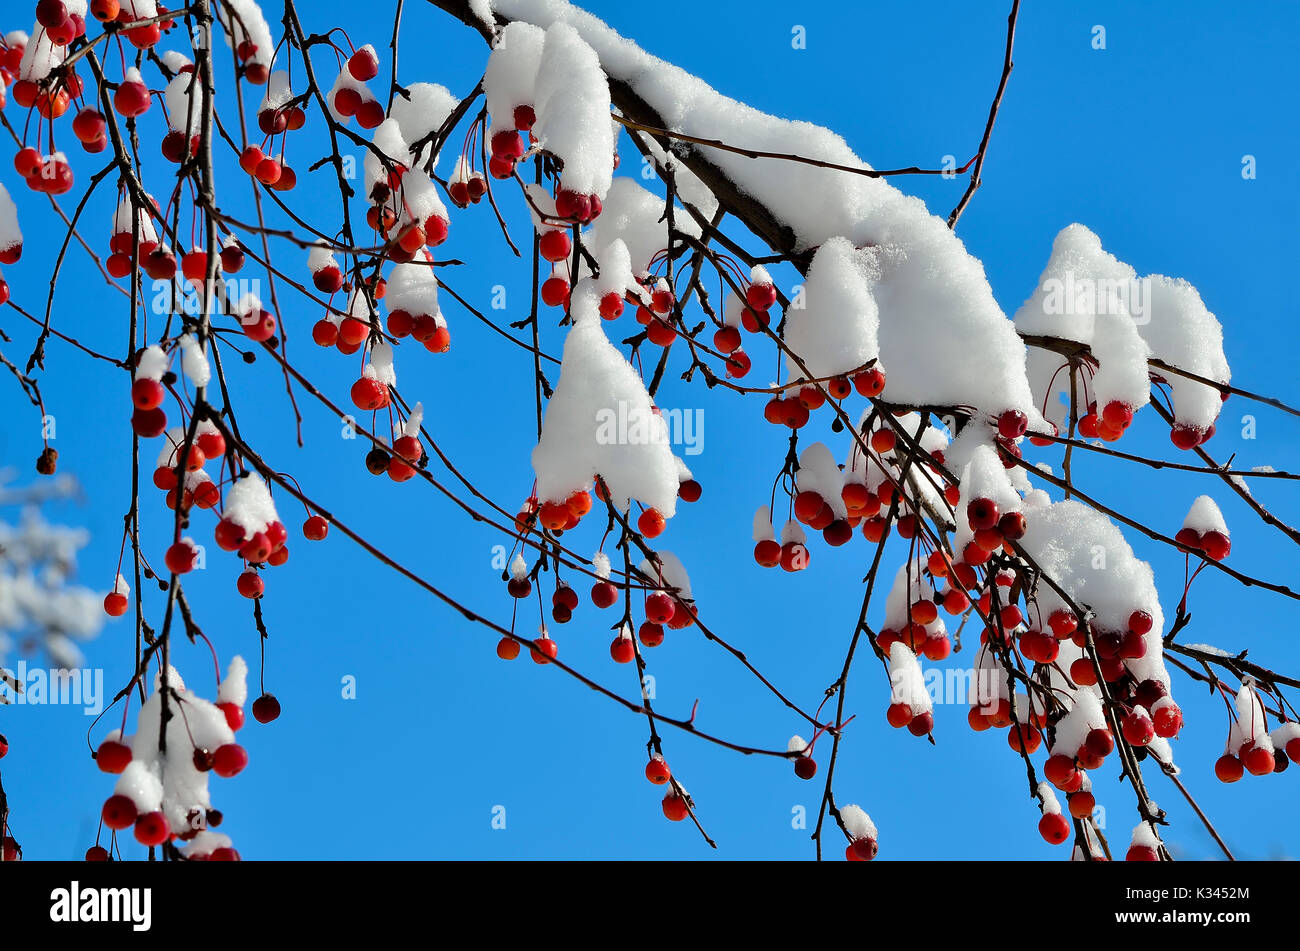 Le decorazioni di Natale della natura invernale - coperta di neve ramo della mela selvatica albero con frutti rossi close-up su un luminoso cielo blu sullo sfondo - amazi Foto Stock